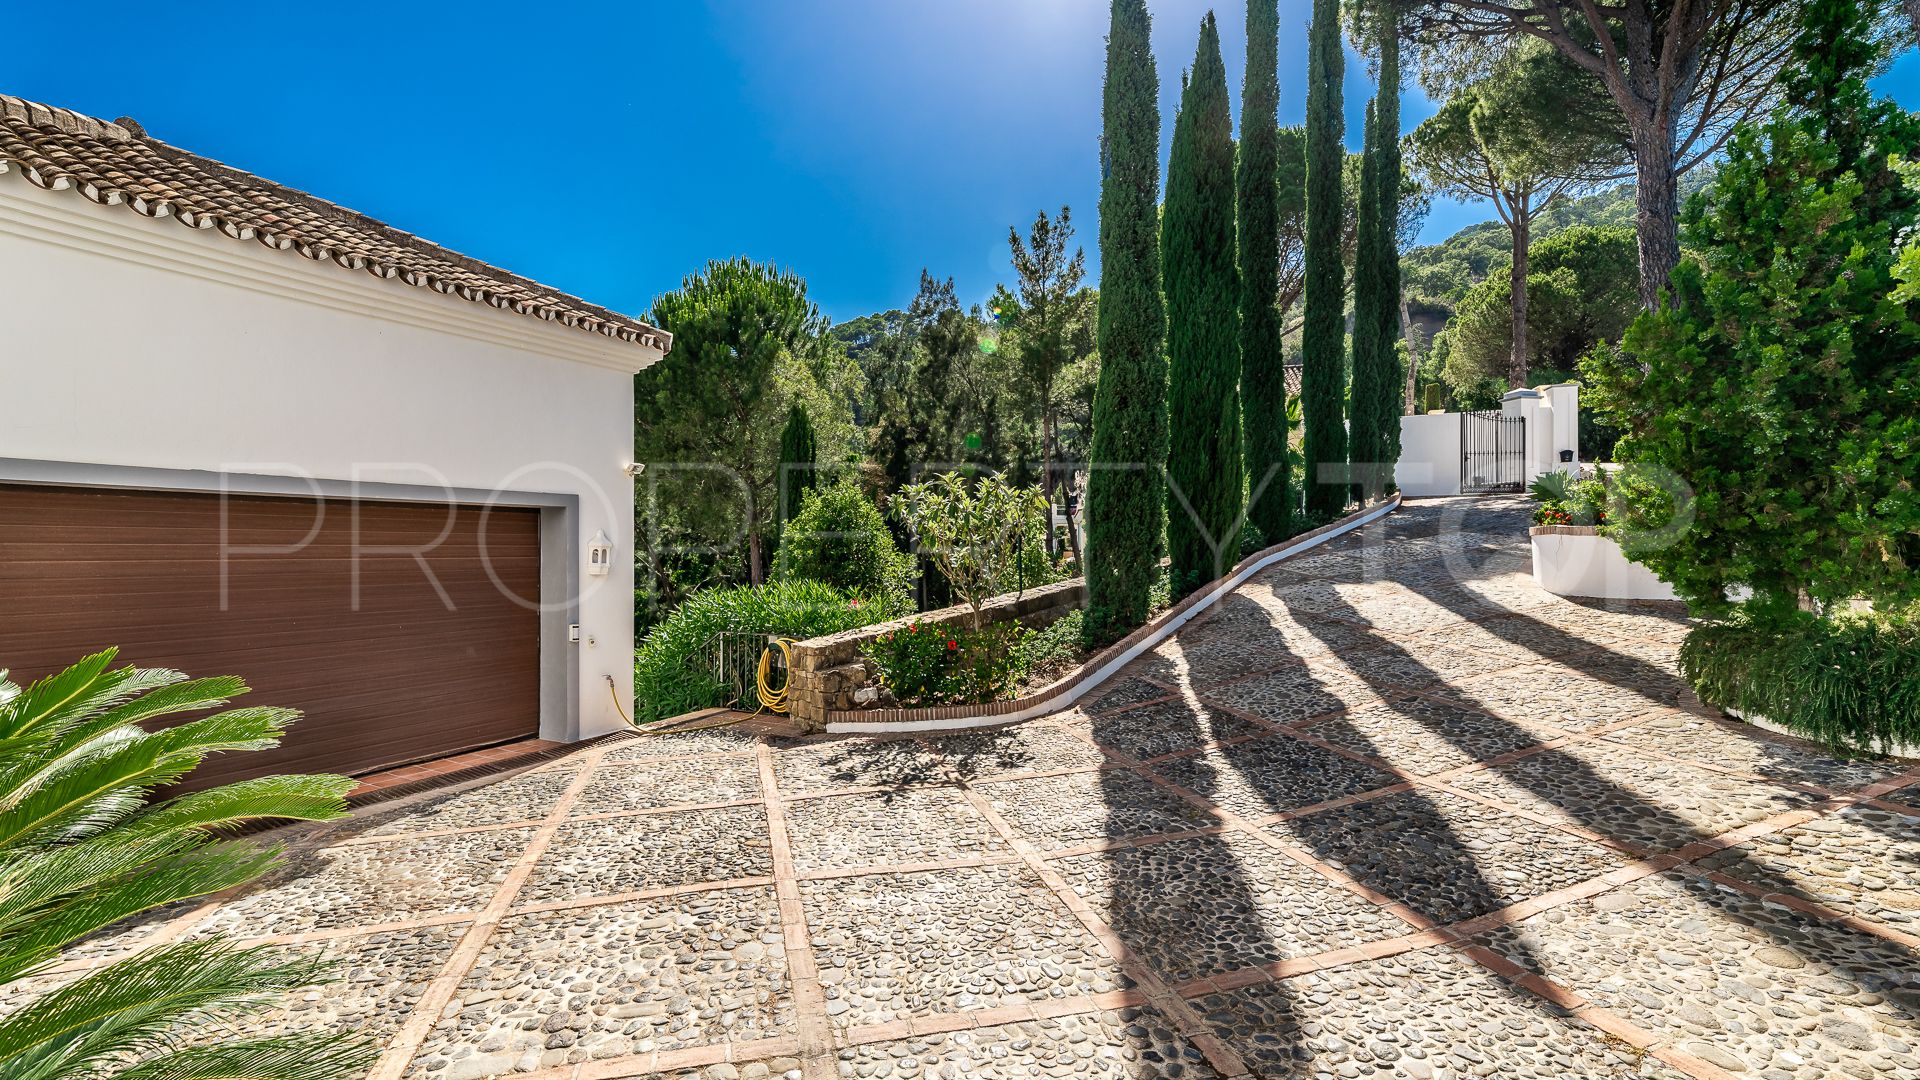 El Madroñal villa for sale